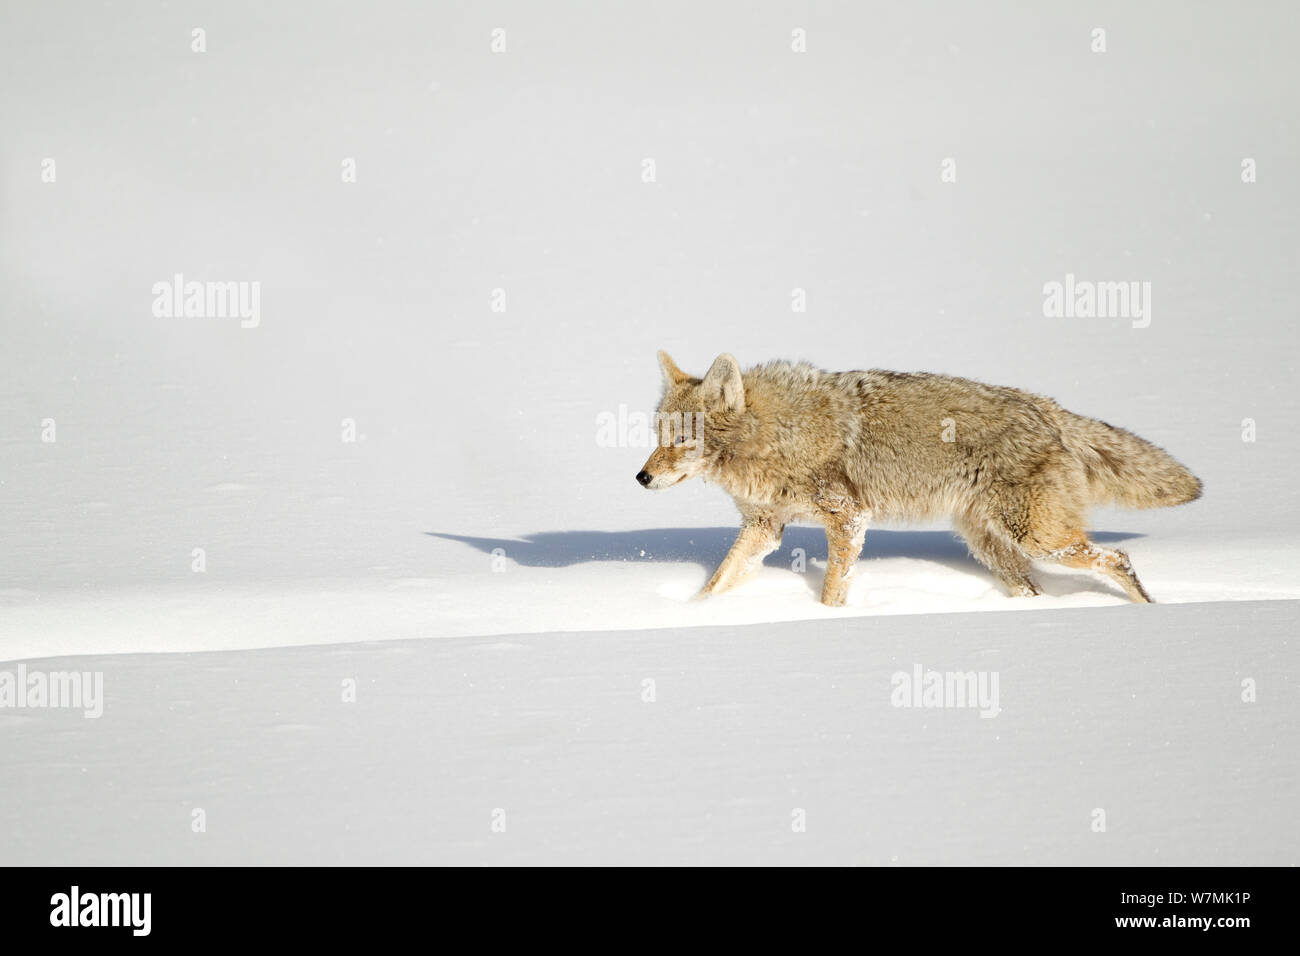 Coyote (Canis latrans) camminando lungo una pista di bisonte in neve. Yellowstone, STATI UNITI D'AMERICA, febbraio. Foto Stock